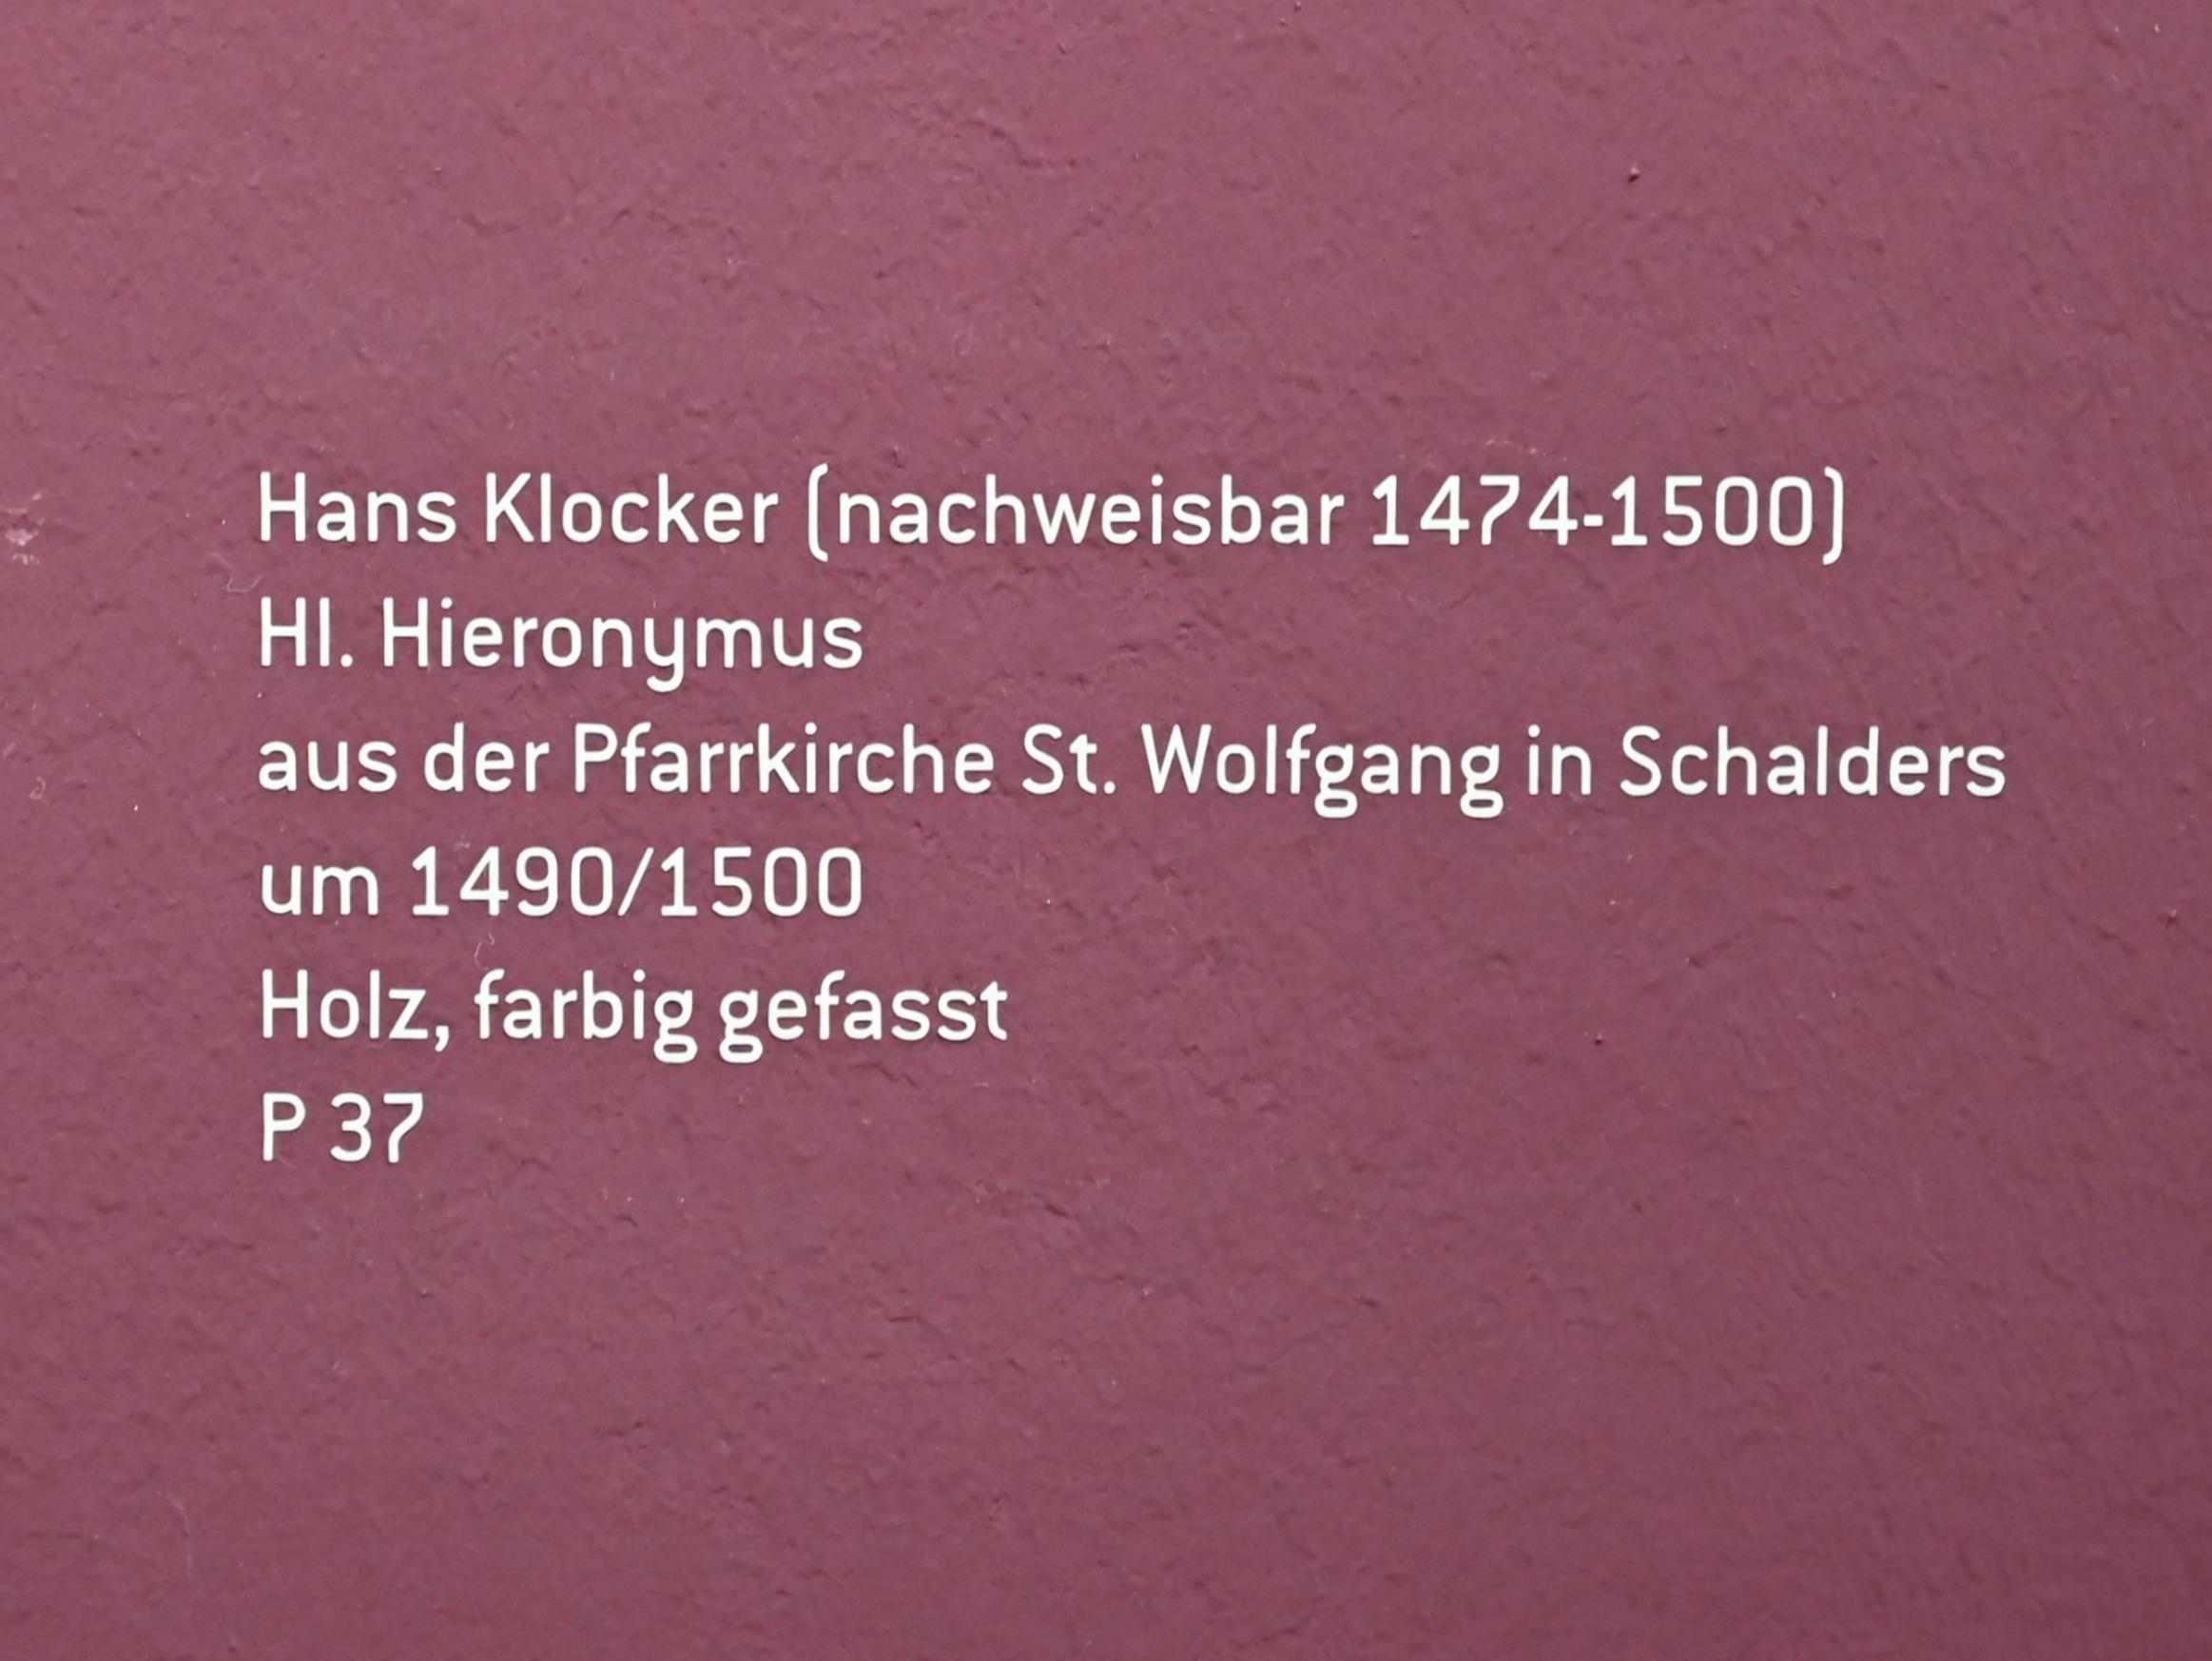 Hans Klocker (1488–1495), Hl. Hieronymus, Schalders, Pfarrkirche St. Wolfgang, jetzt Innsbruck, Tiroler Landesmuseum, Ferdinandeum, Mittelalter 2, um 1490–1500, Bild 5/5